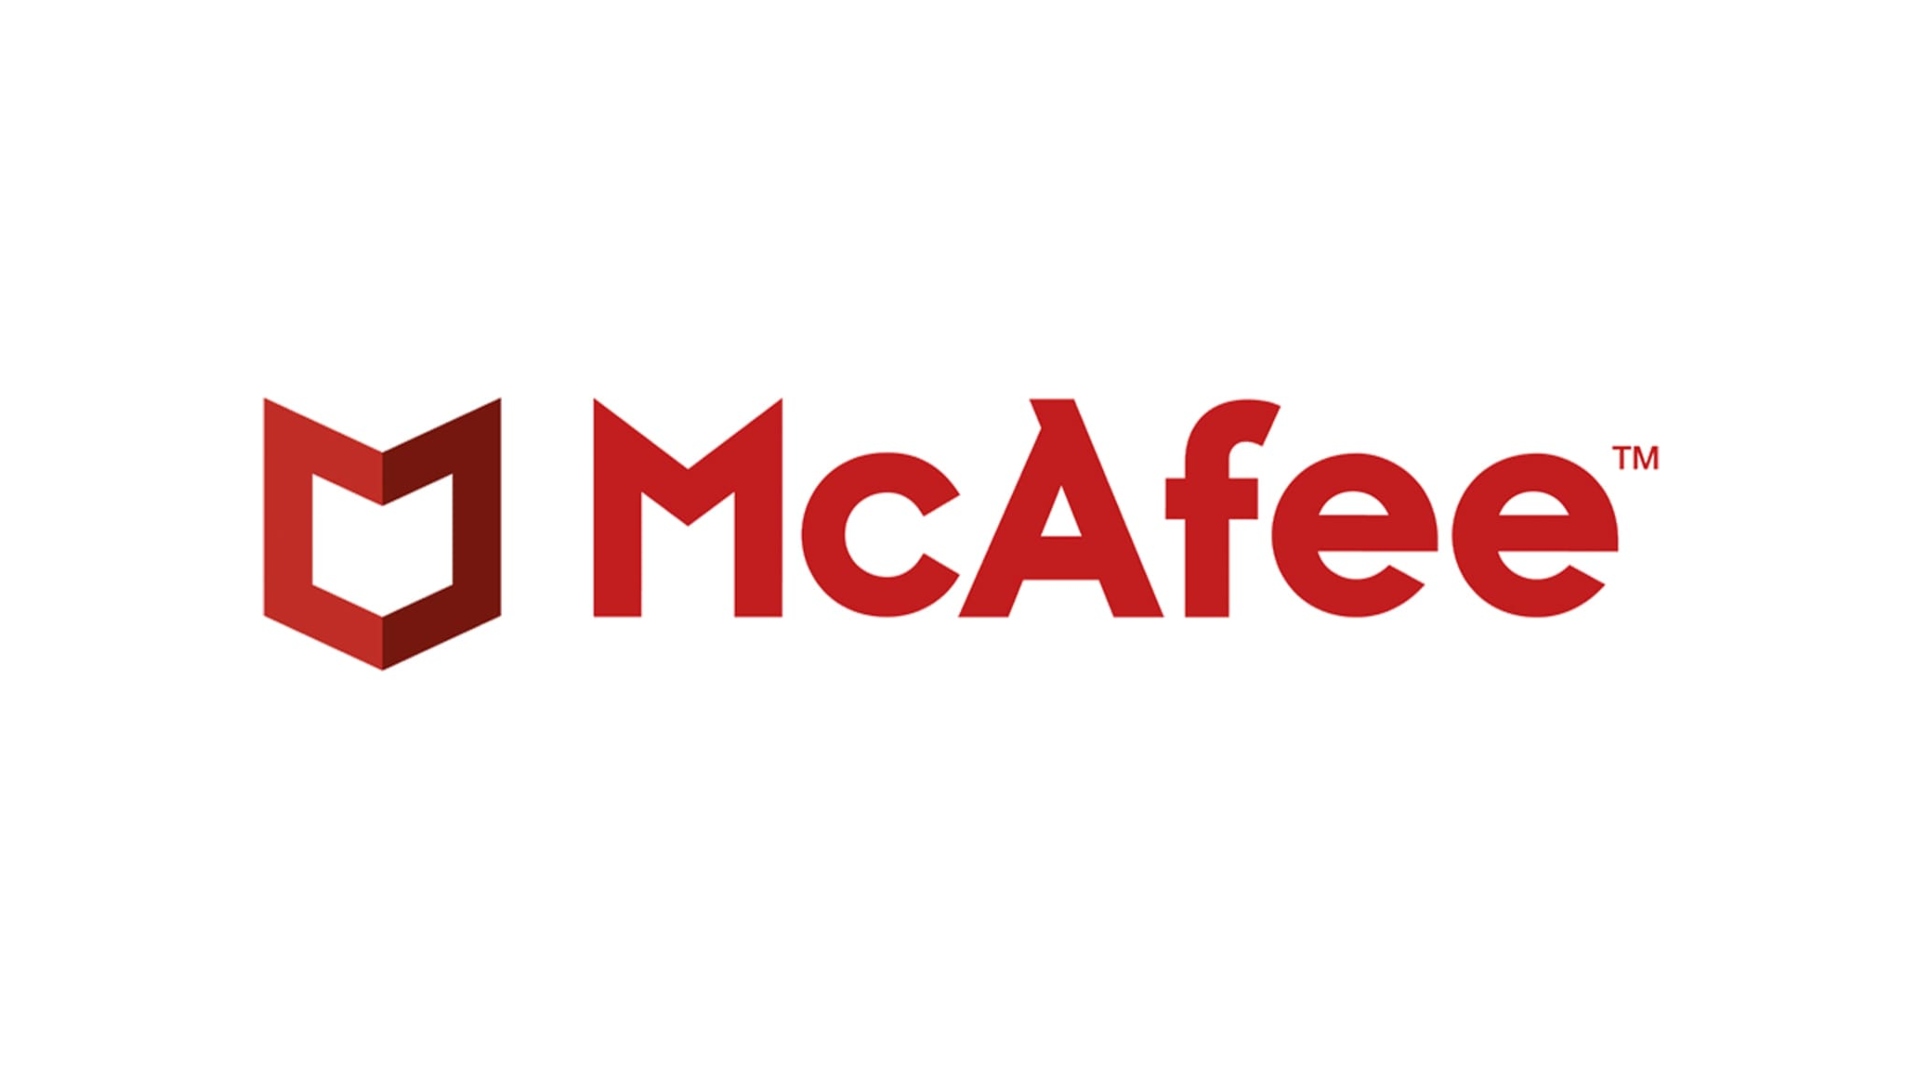 Bästa antivirus: McAfee skriven i rött på en vit bakgrund tillsammans med dess insignier